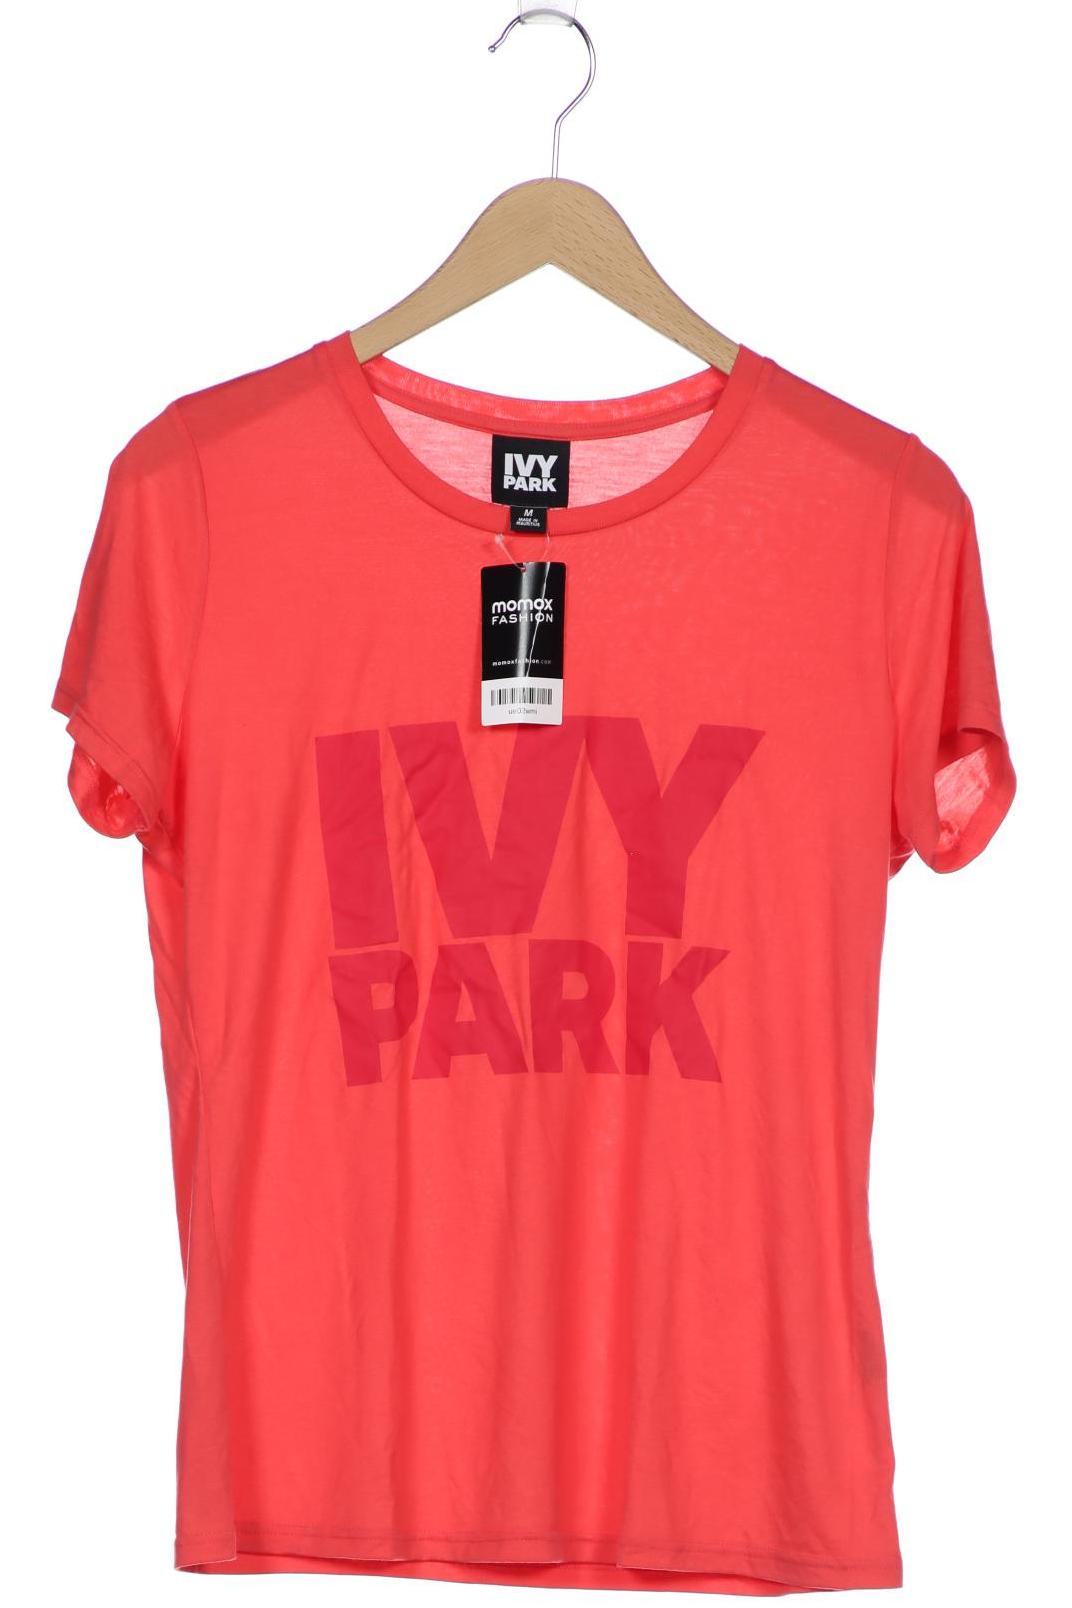 IVY PARK Damen T-Shirt, pink von Ivy Park